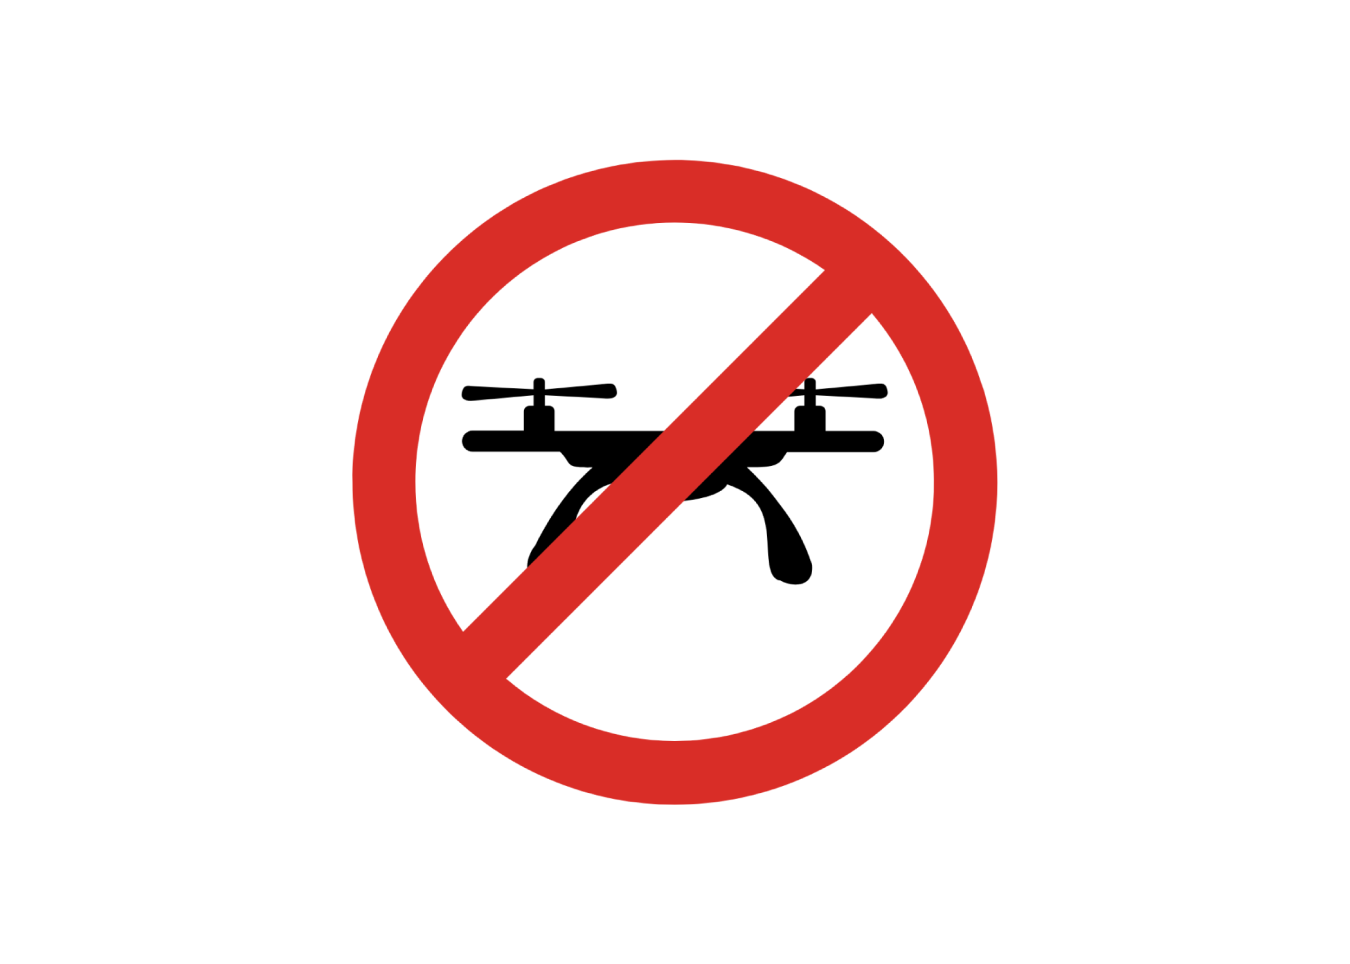 No drones sign